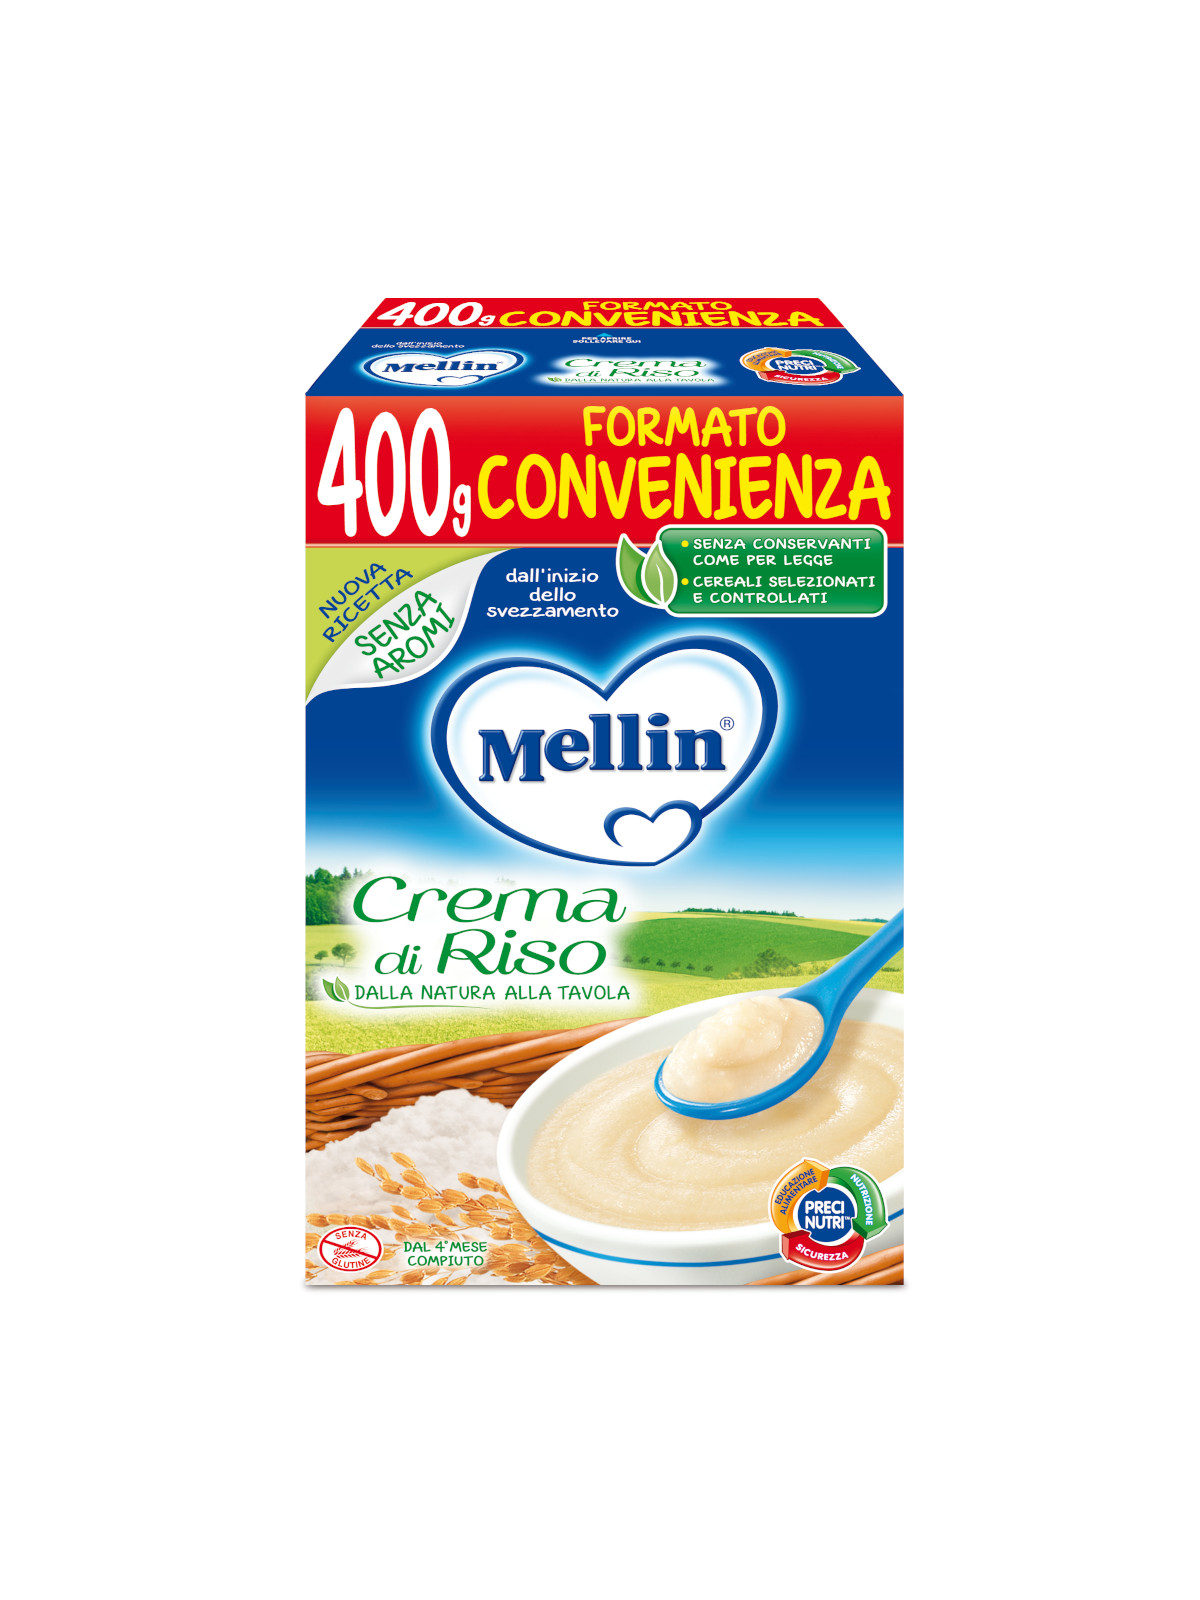 Crema di Riso for Bambini - Mellin